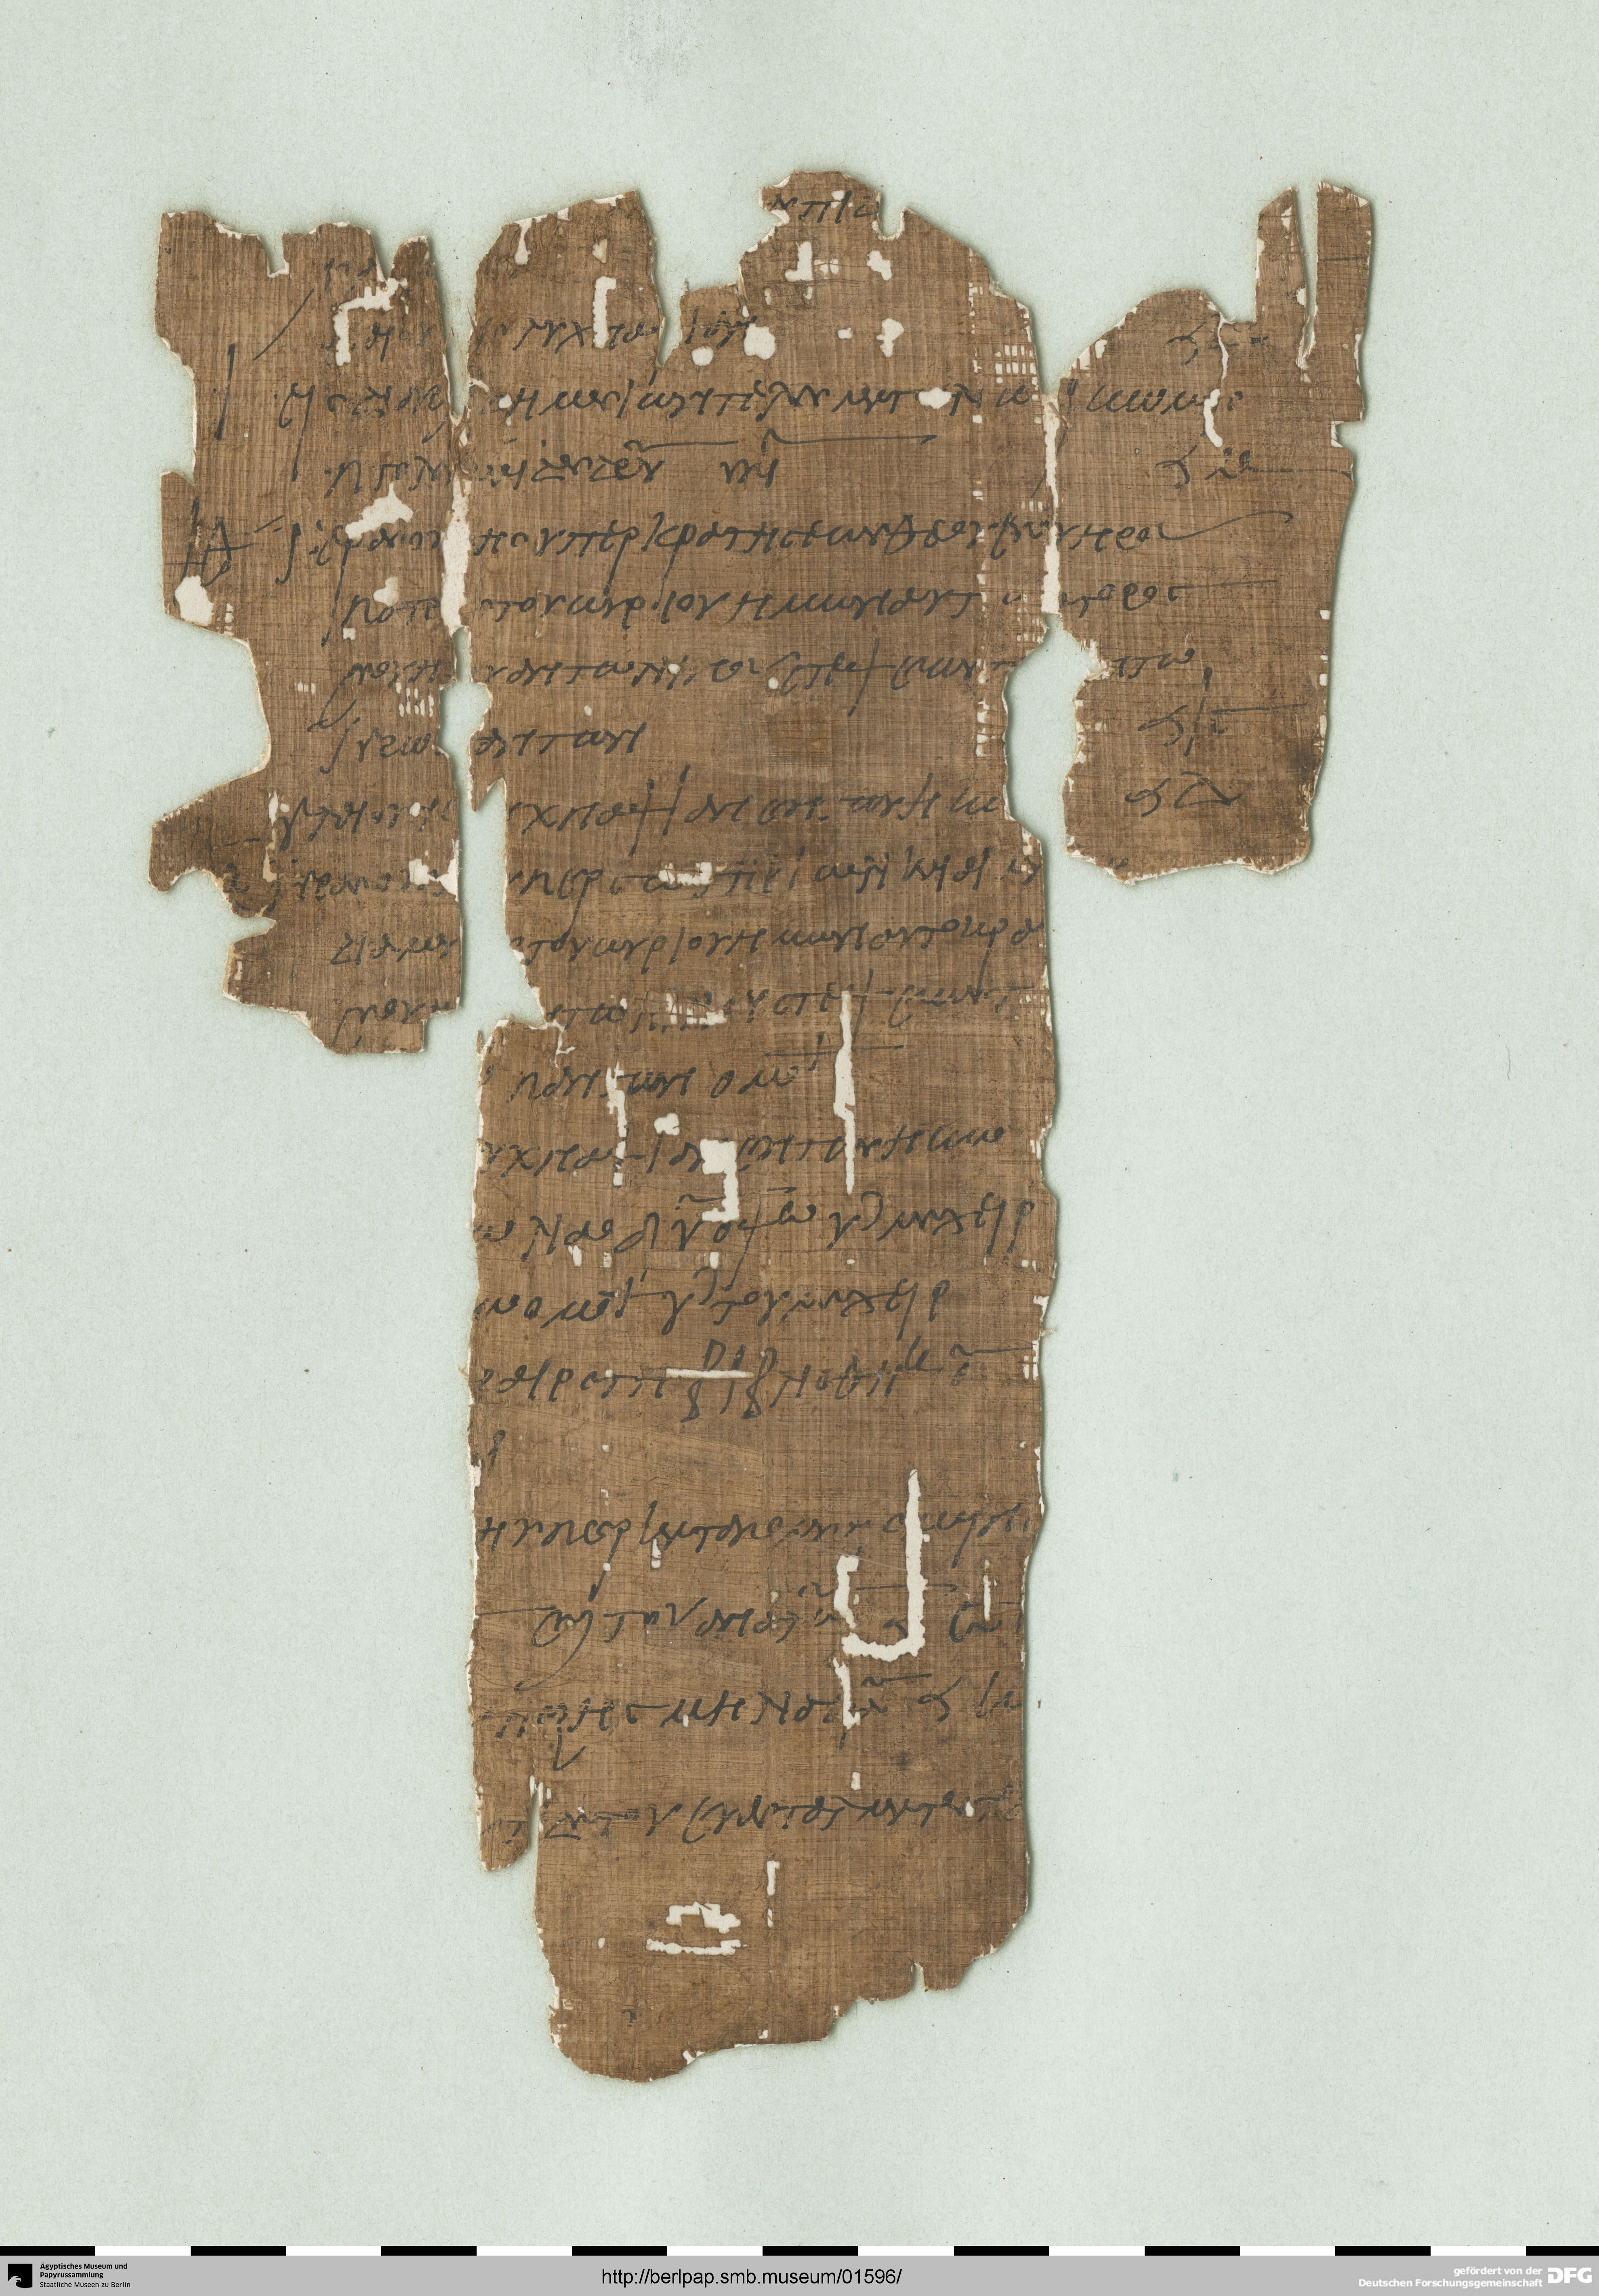 http://berlpap.smb.museum/Original/P_05084_R_001.jpg (Ägyptisches Museum und Papyrussammlung, Staatliche Museen zu Berlin CC BY-NC-SA)